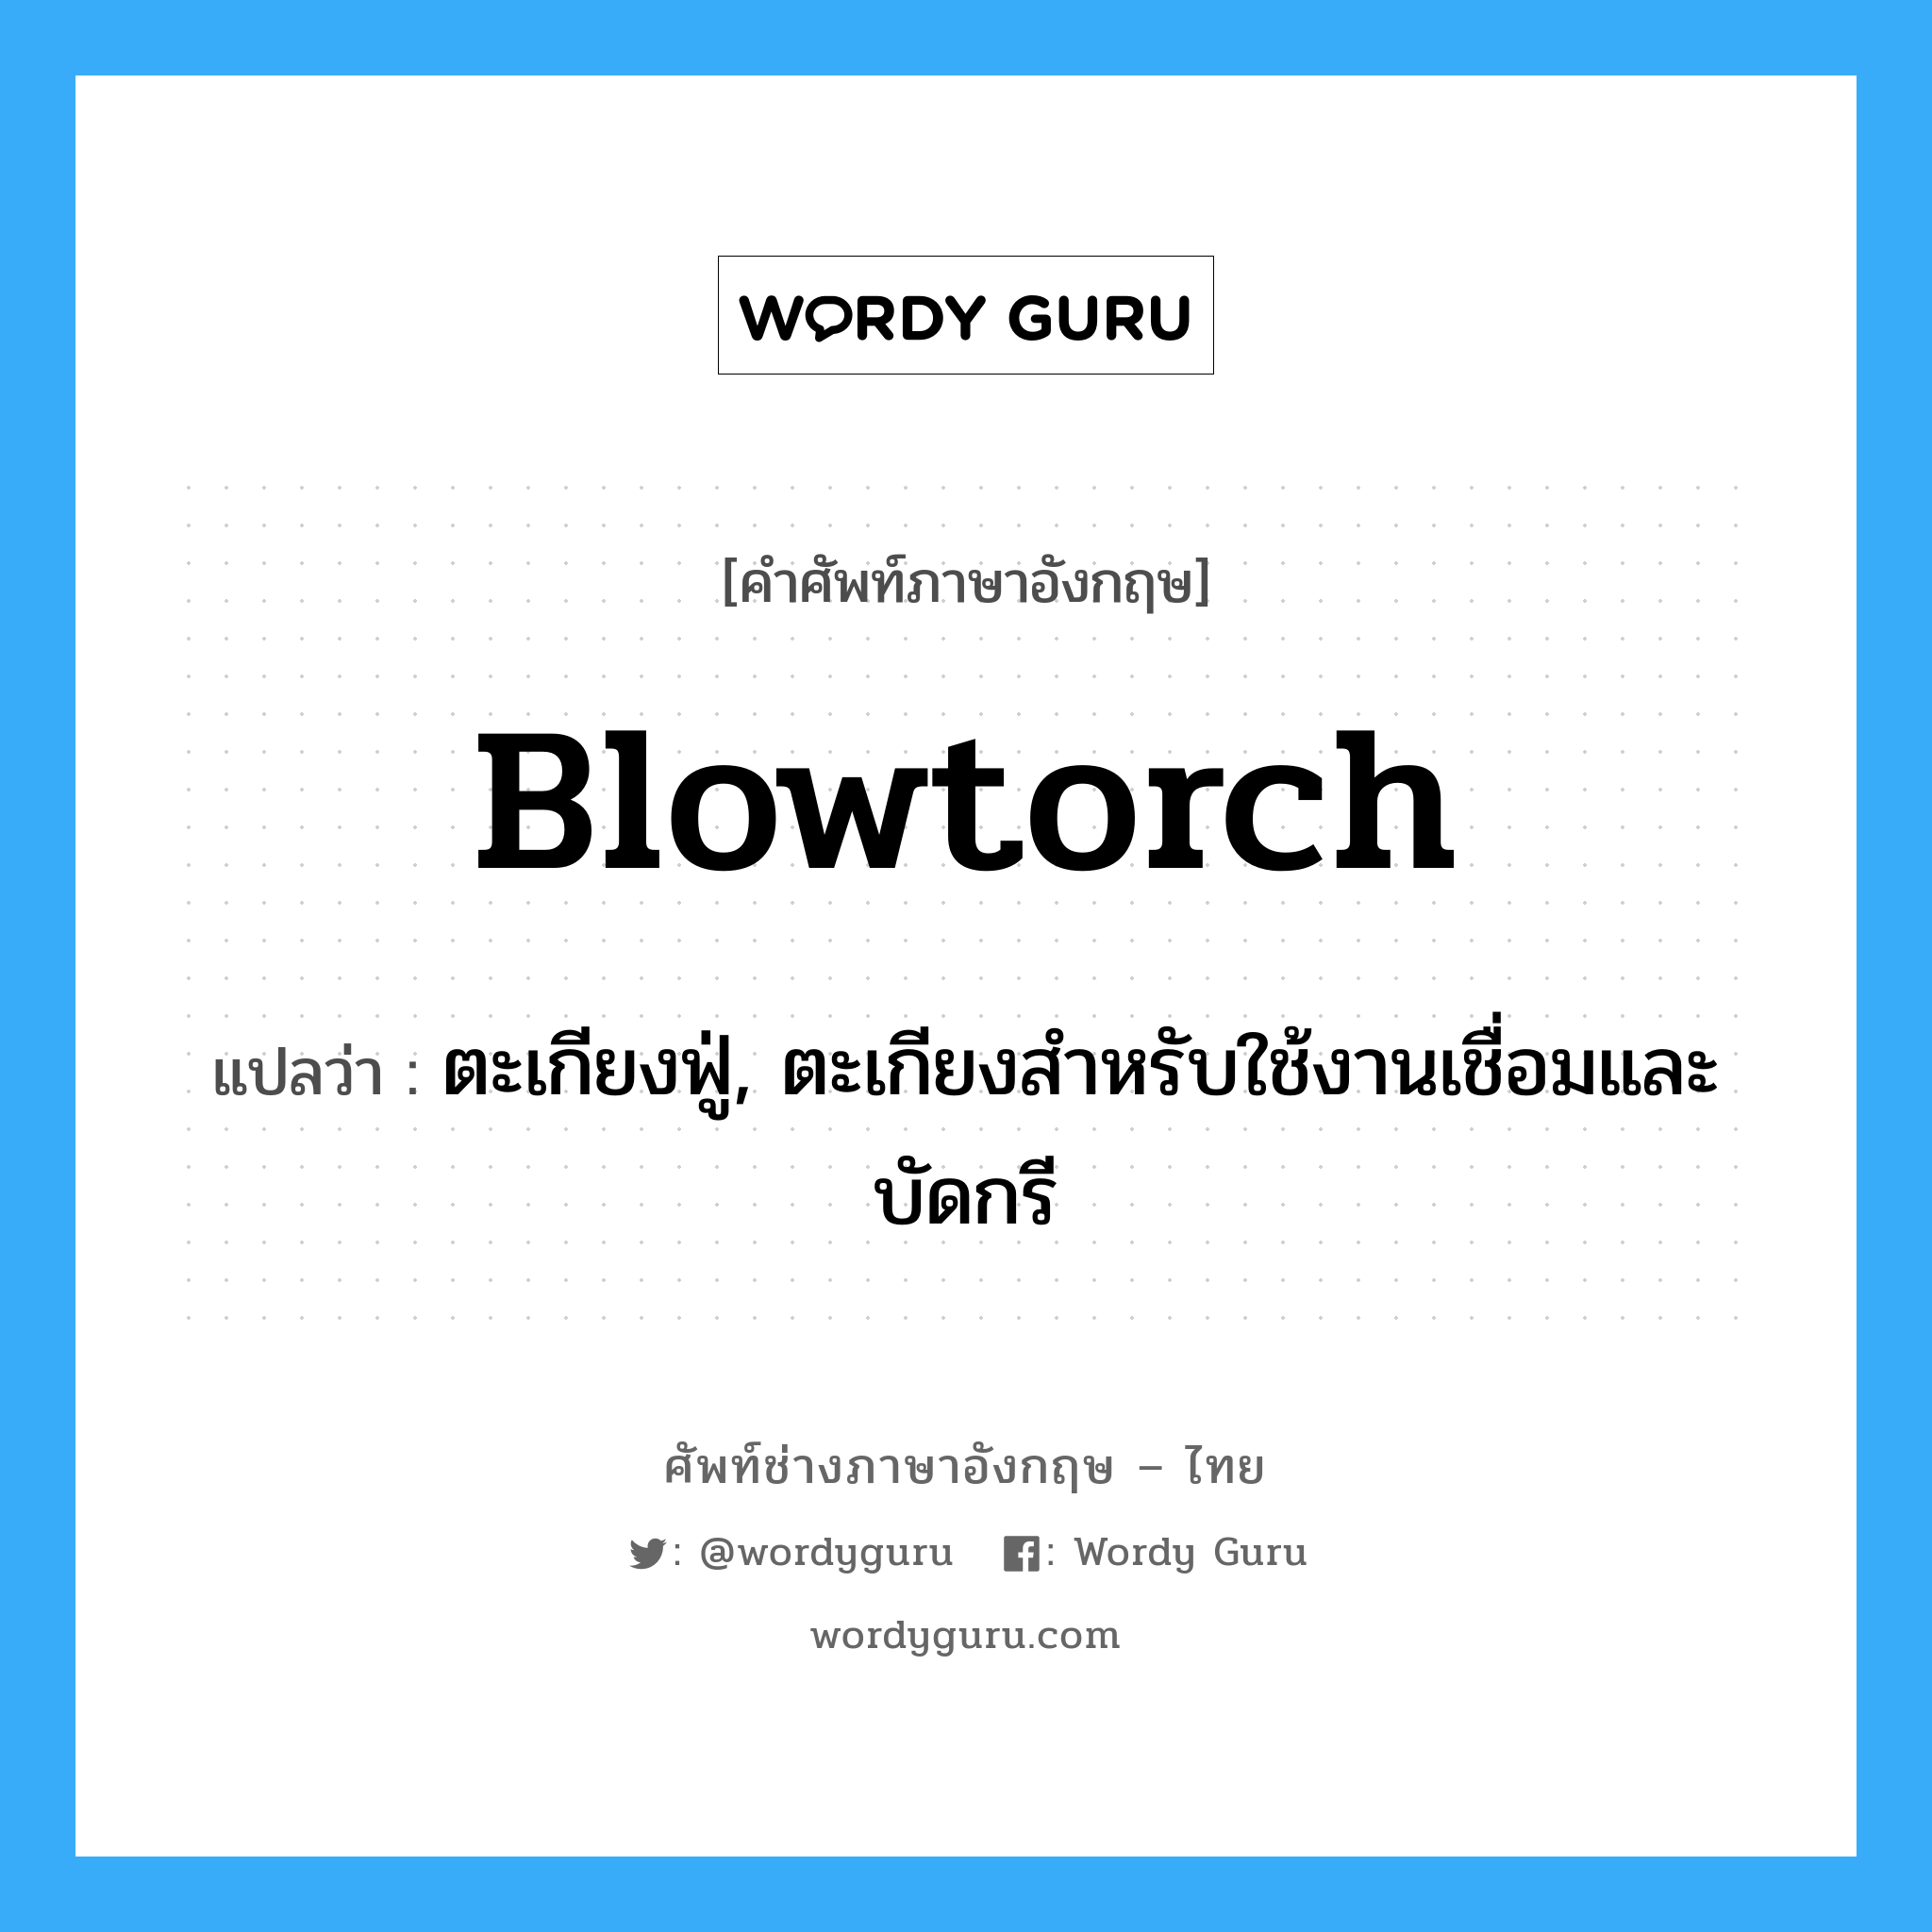 blowtorch แปลว่า?, คำศัพท์ช่างภาษาอังกฤษ - ไทย blowtorch คำศัพท์ภาษาอังกฤษ blowtorch แปลว่า ตะเกียงฟู่, ตะเกียงสำหรับใช้งานเชื่อมและบัดกรี